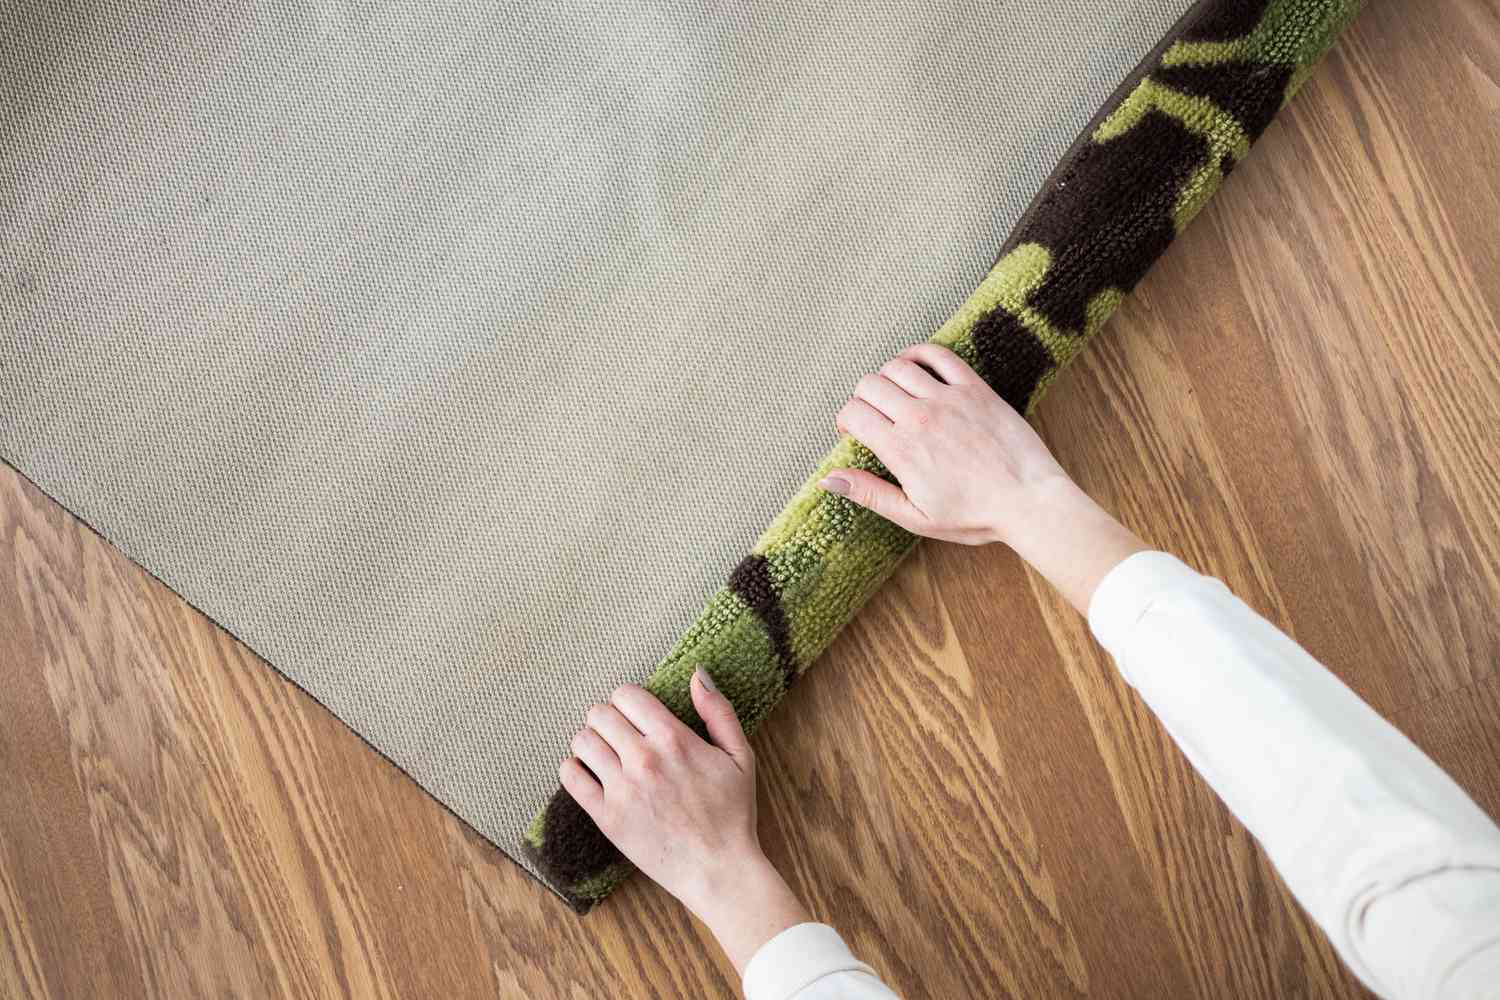 Grüner und brauner Teppich aufgerollt, damit er flacher liegt